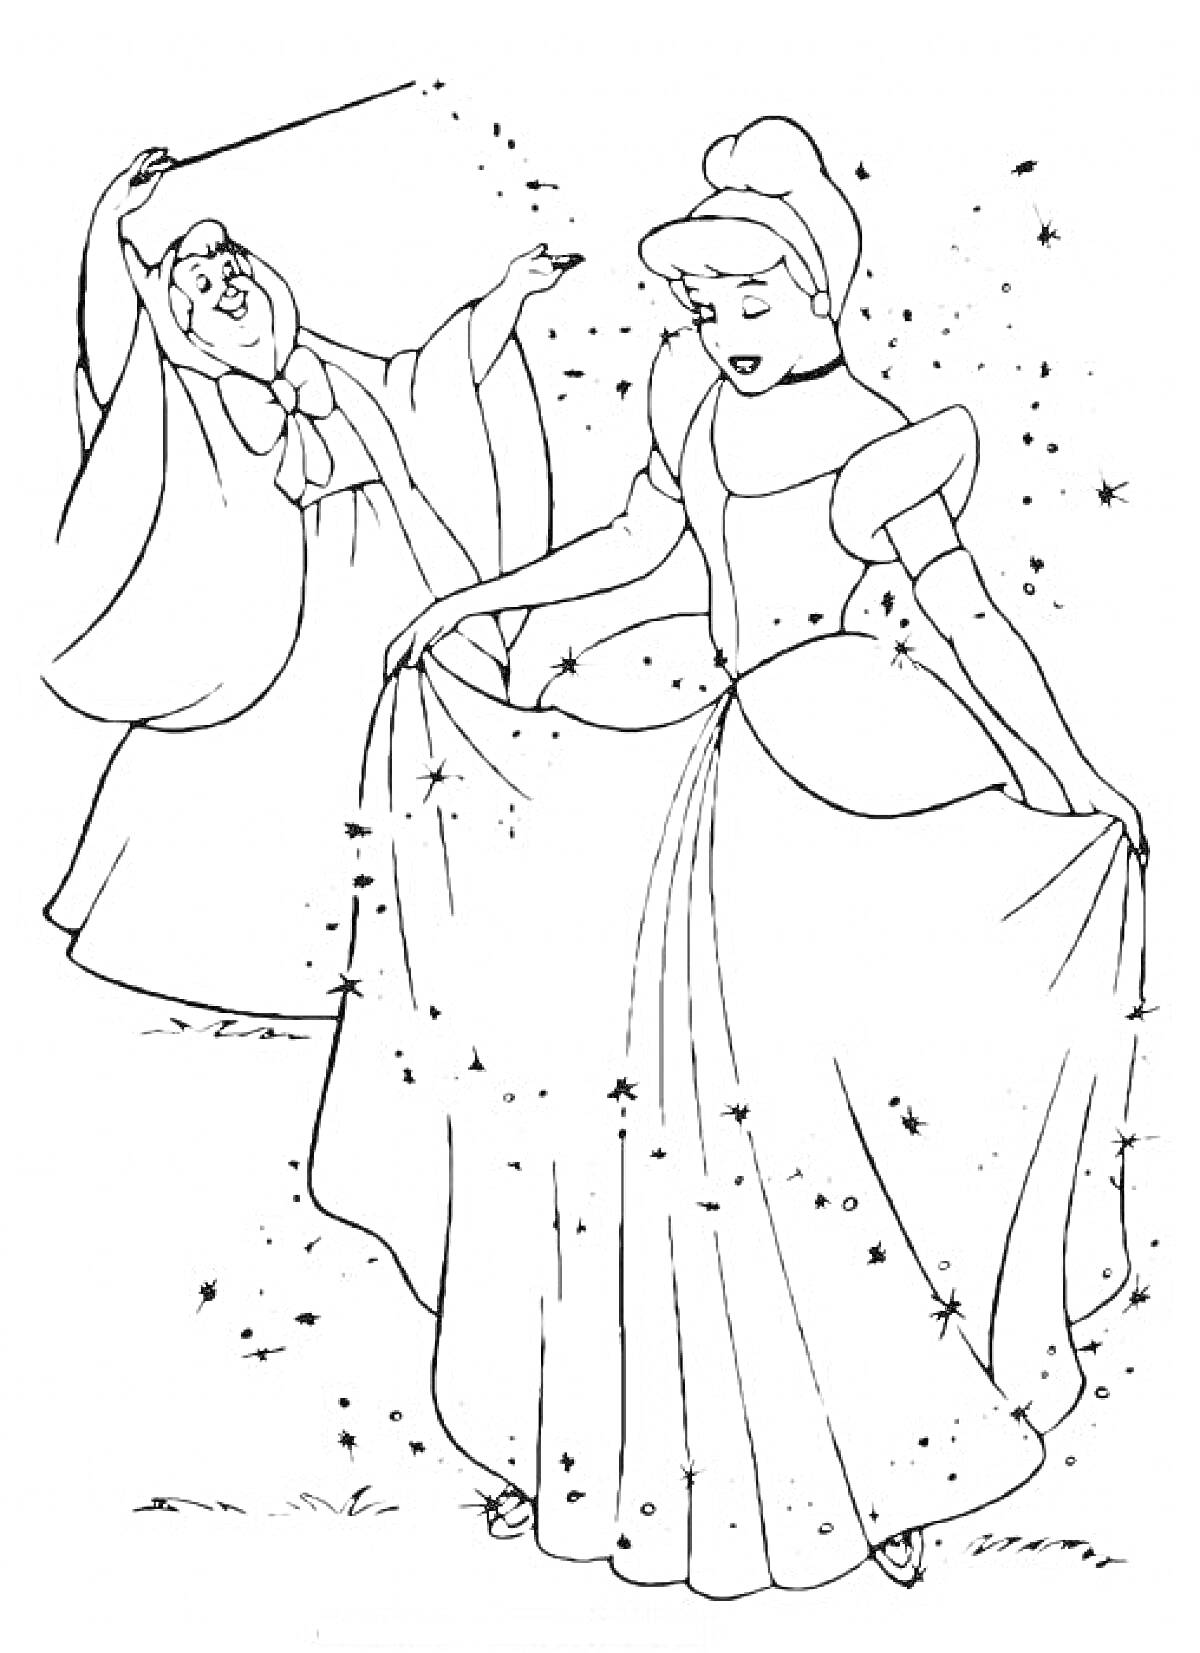 РаскраскаВолшебница и девушка в длинном платье, окружённая искорками